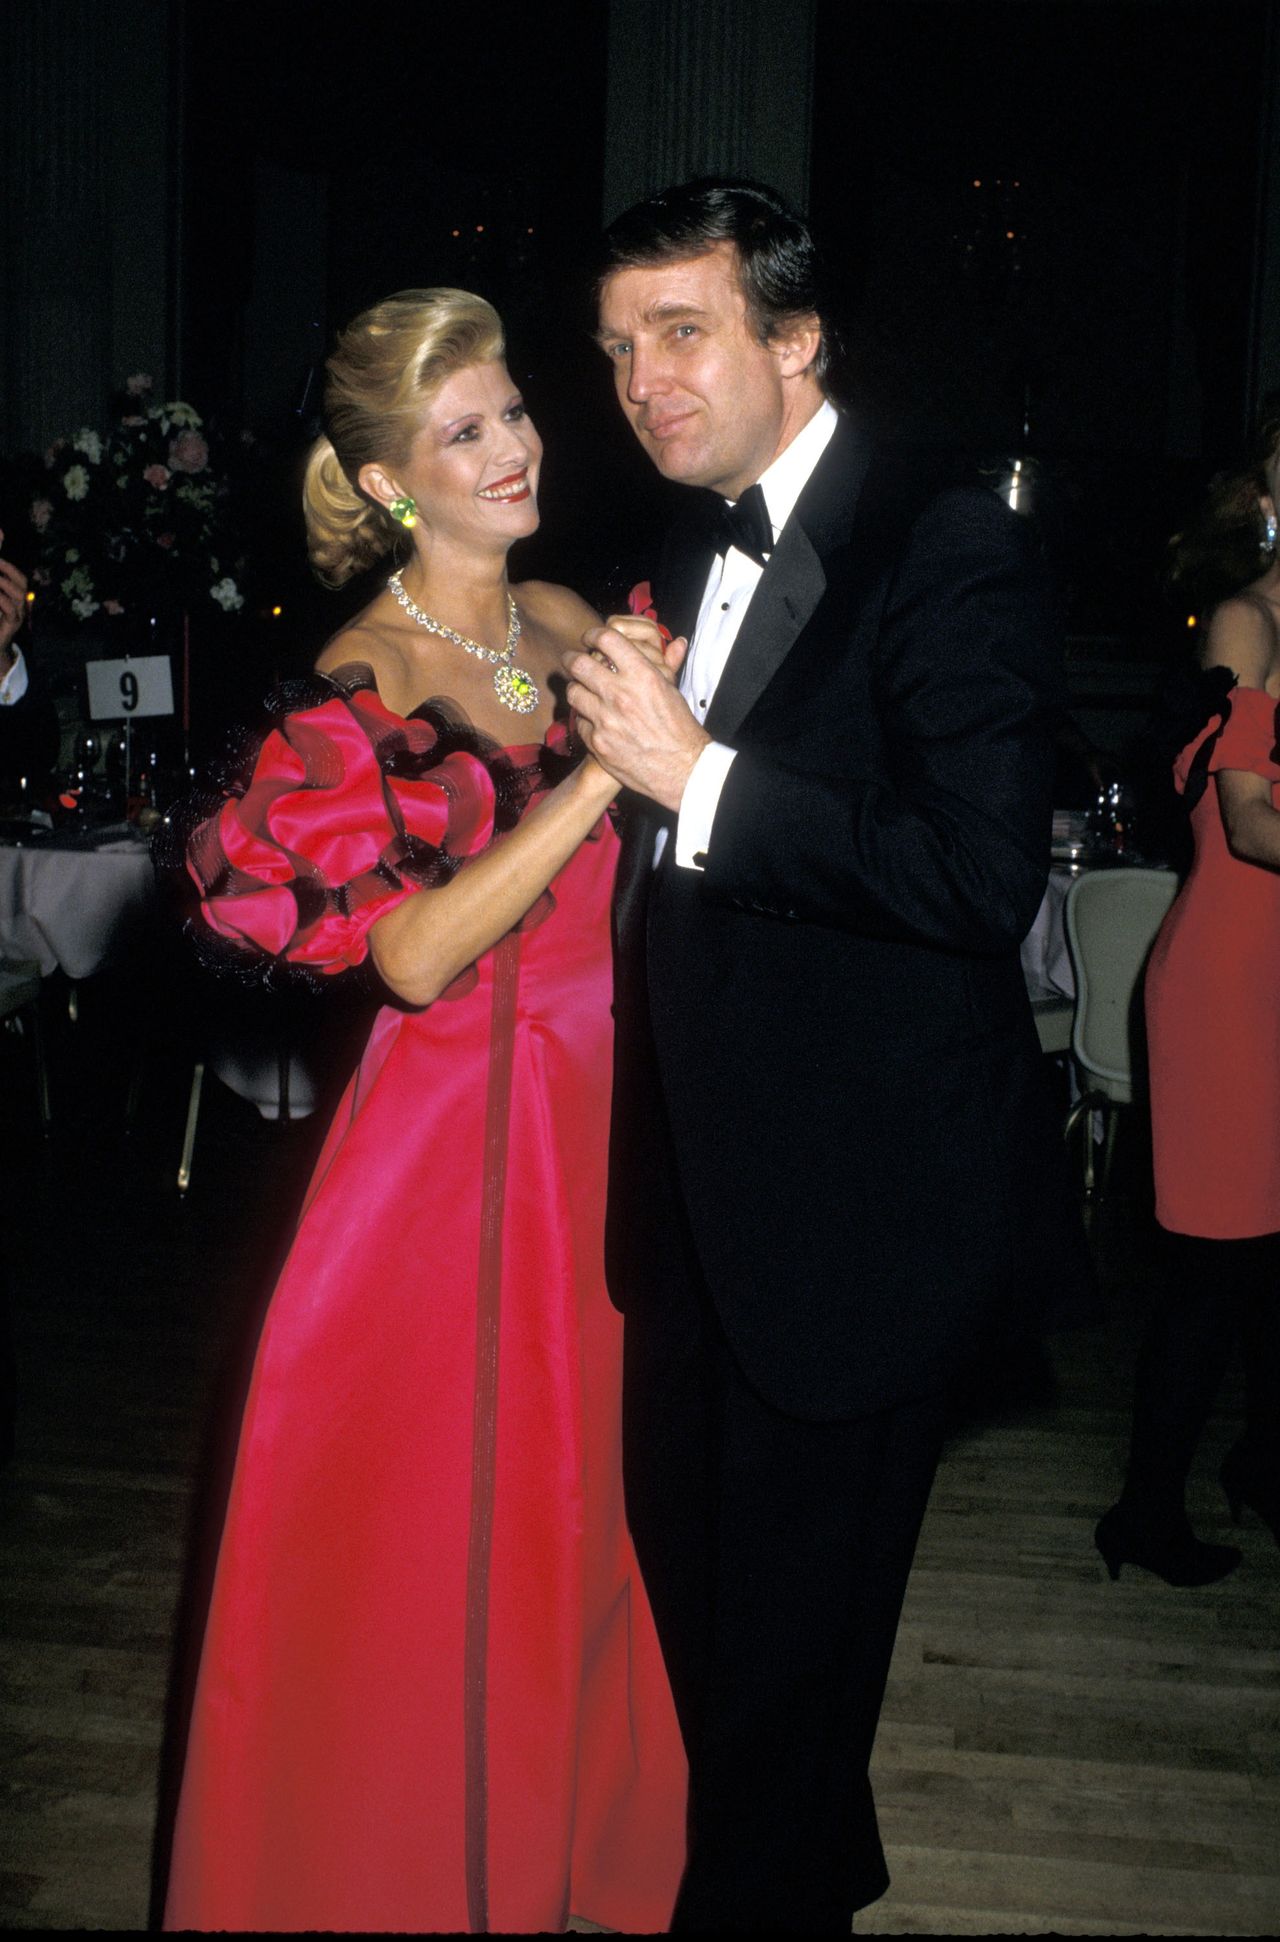 Ivana i Donald Trump pobrali się w 1977 roku